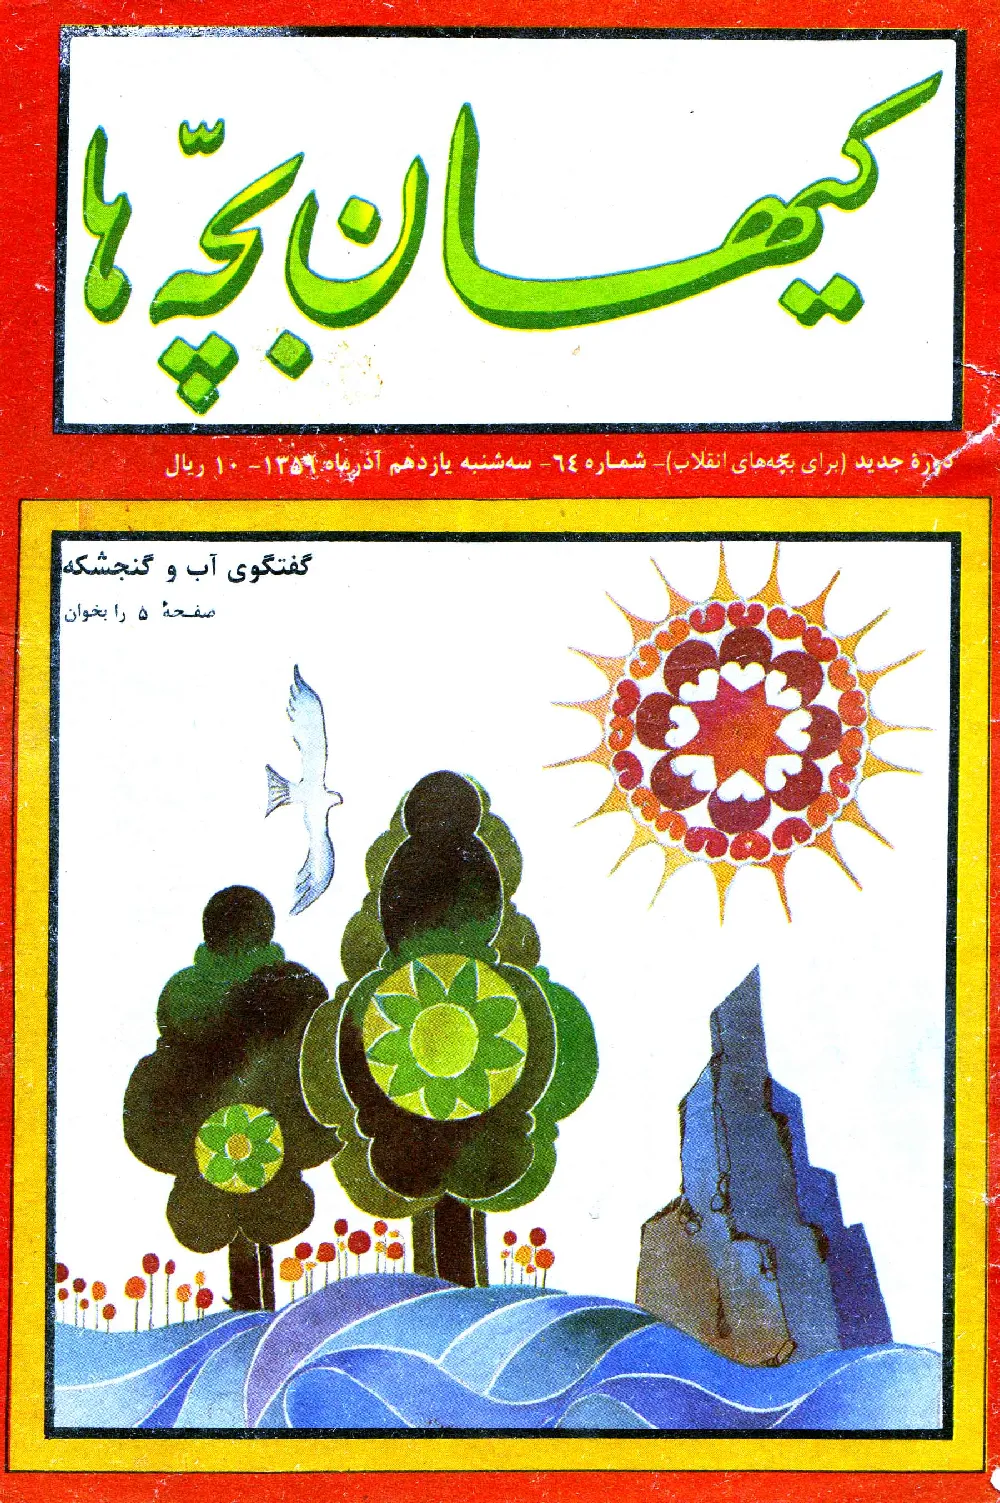 کیهان بچه ها - دوره جدید برای بچه های انقلاب - شماره 64 - آذر 1359